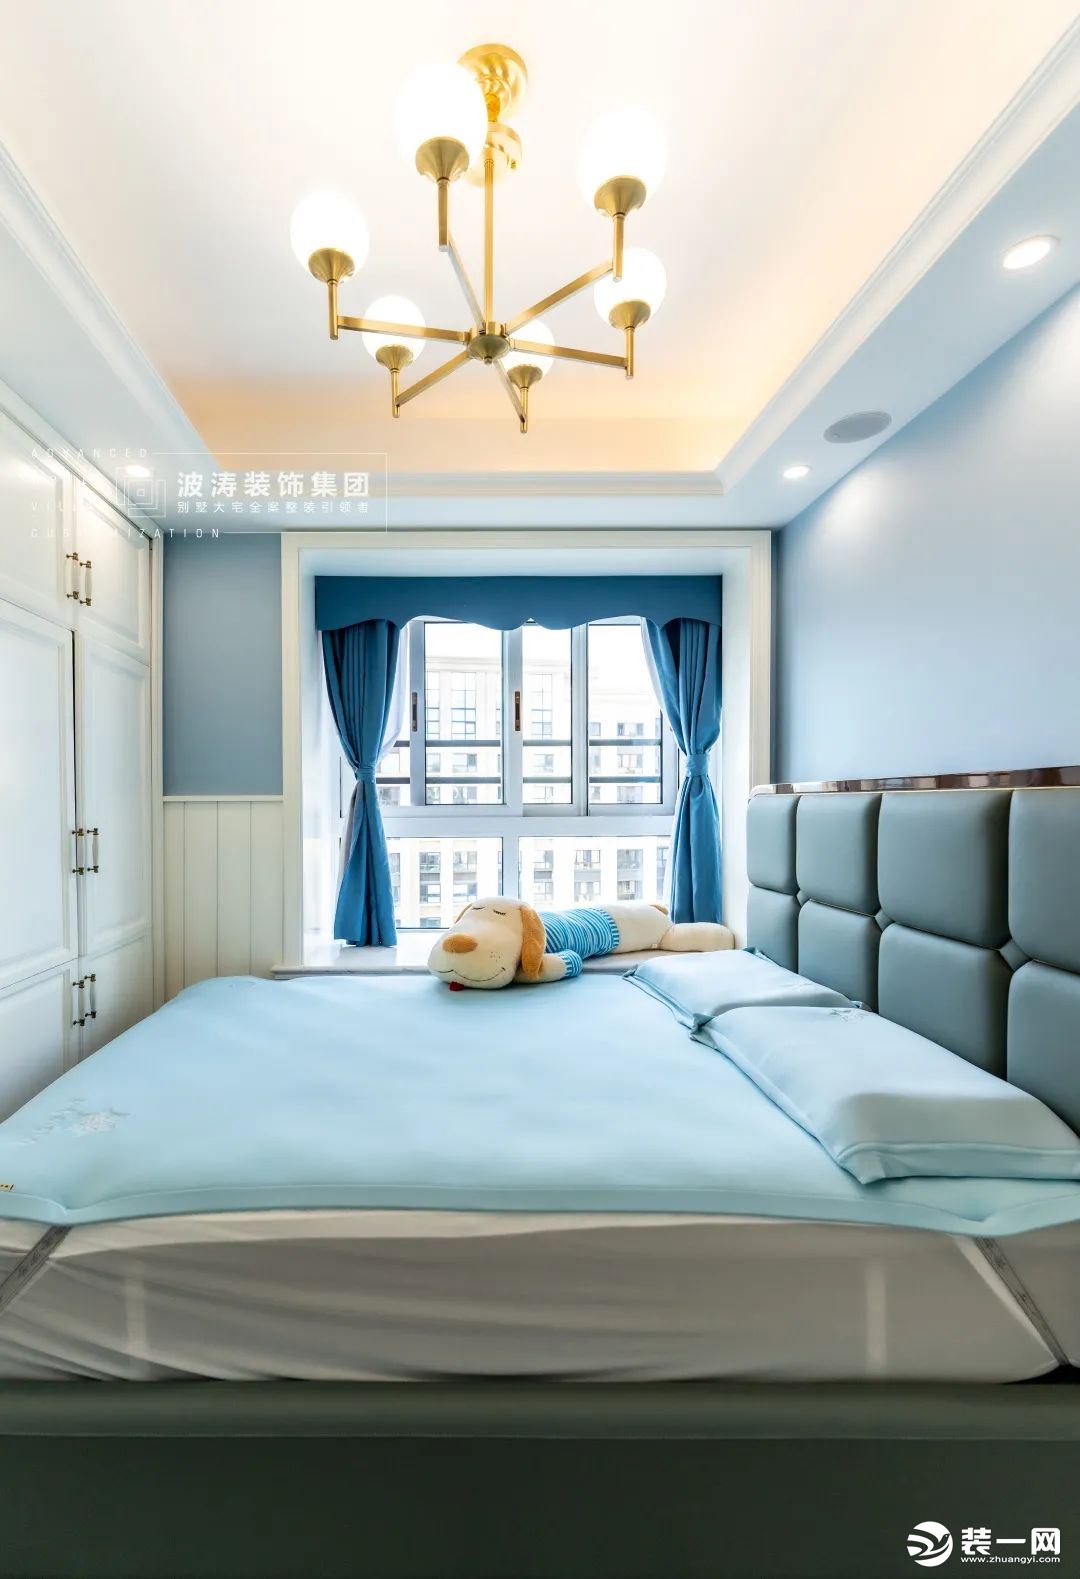 儿童房整体以淡蓝色为主色调，利用自然光线和室内装饰结合，营造温馨宁静的氛围。简洁线条增添了美式风格自